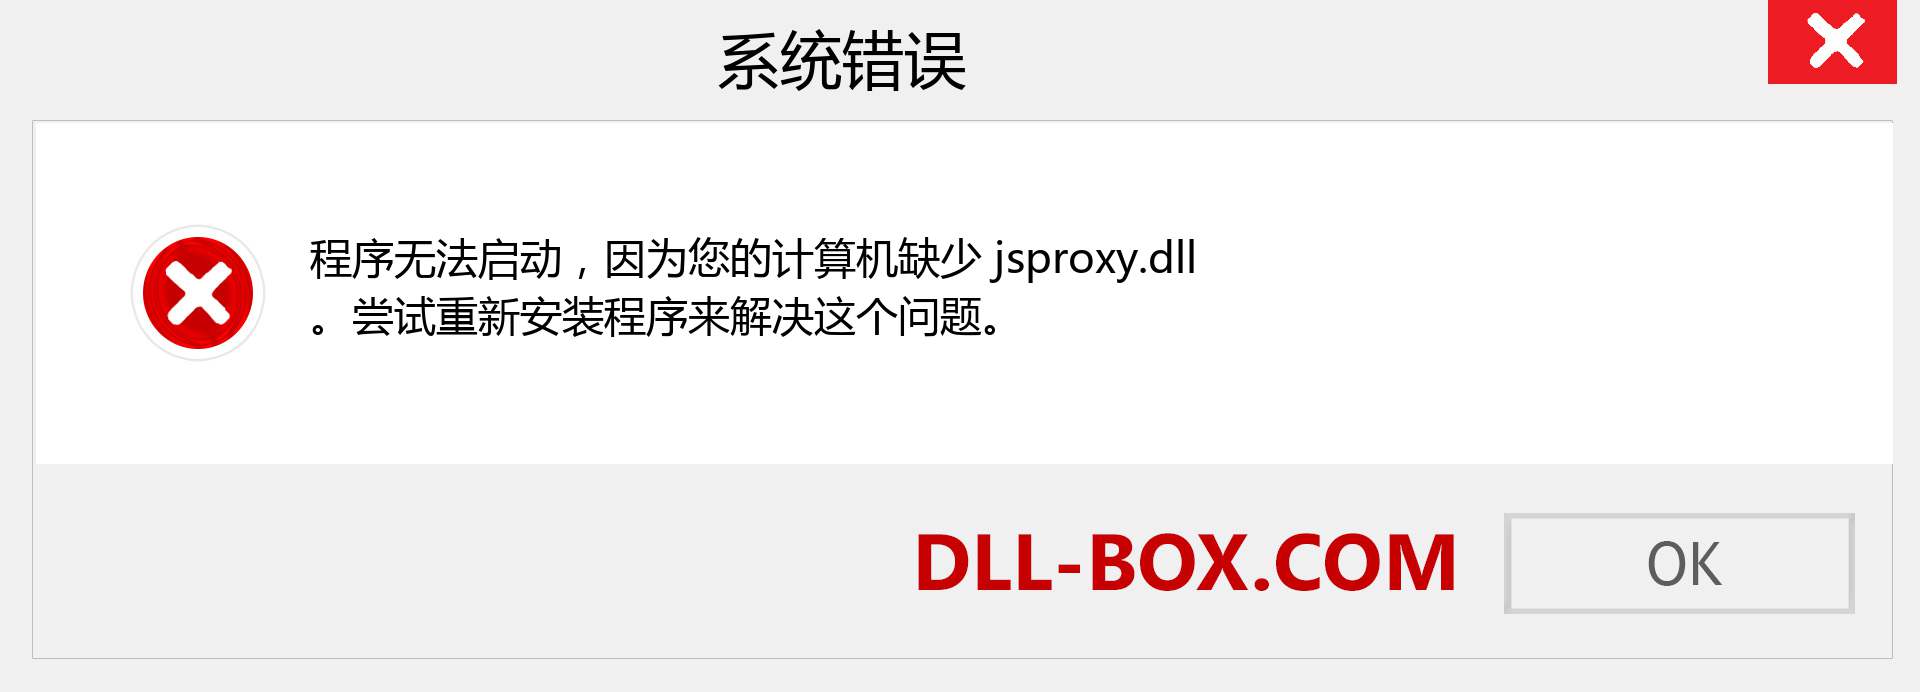 jsproxy.dll 文件丢失？。 适用于 Windows 7、8、10 的下载 - 修复 Windows、照片、图像上的 jsproxy dll 丢失错误